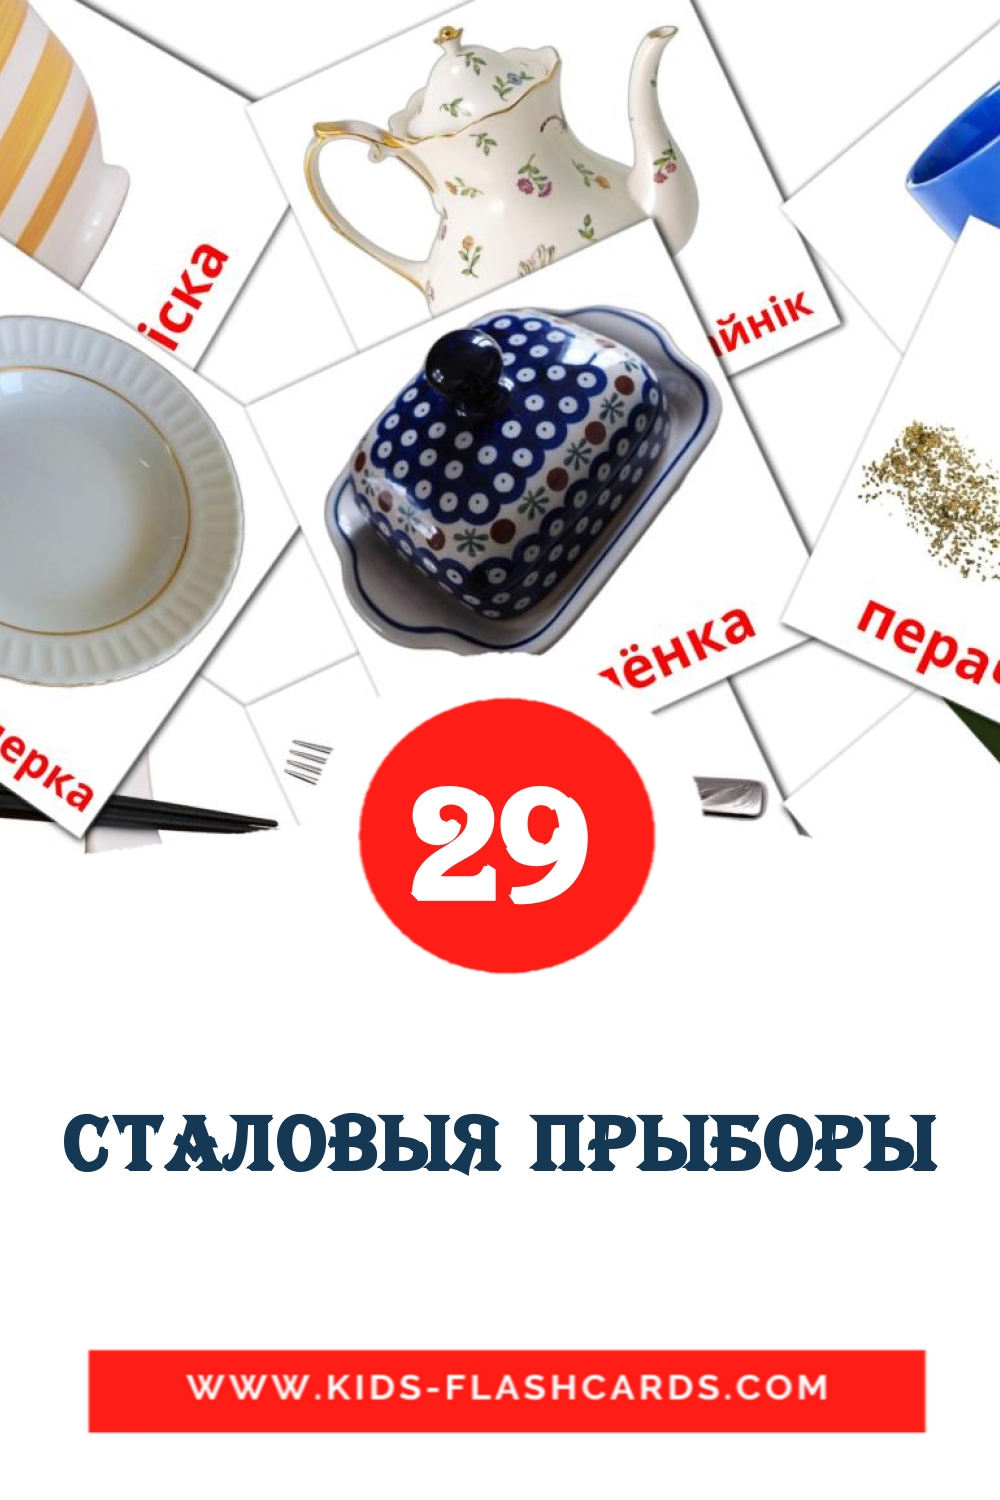 29 Cartões com Imagens de Сталовыя прыборы para Jardim de Infância em bielorrusso